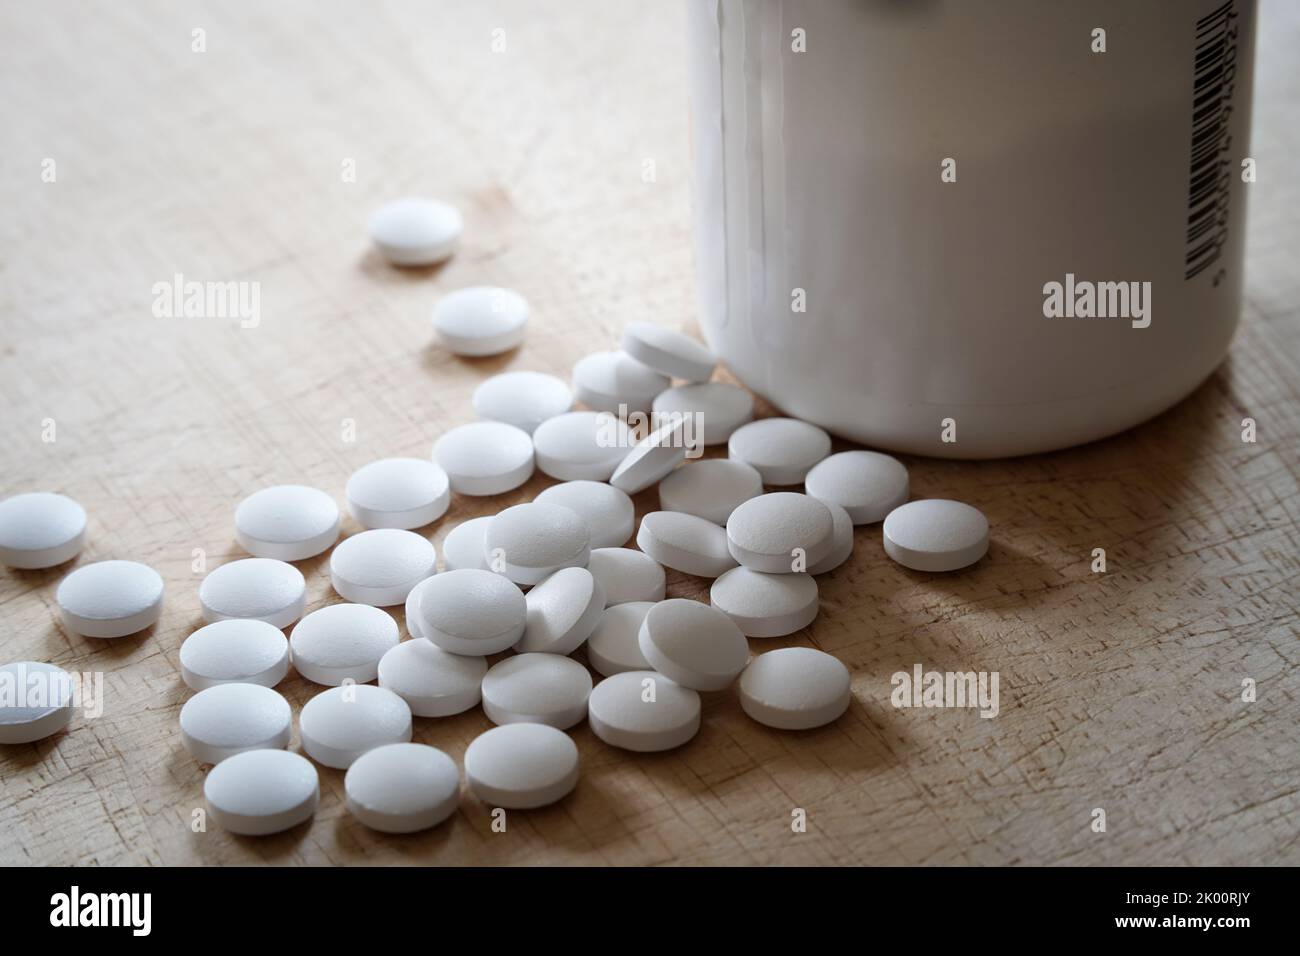 Medicina di plastica o vitamine bottiglia e capsule bianche pillole fuori, medicina e concetto di salute. Illustrazione di epidemie di oppioidi Foto Stock